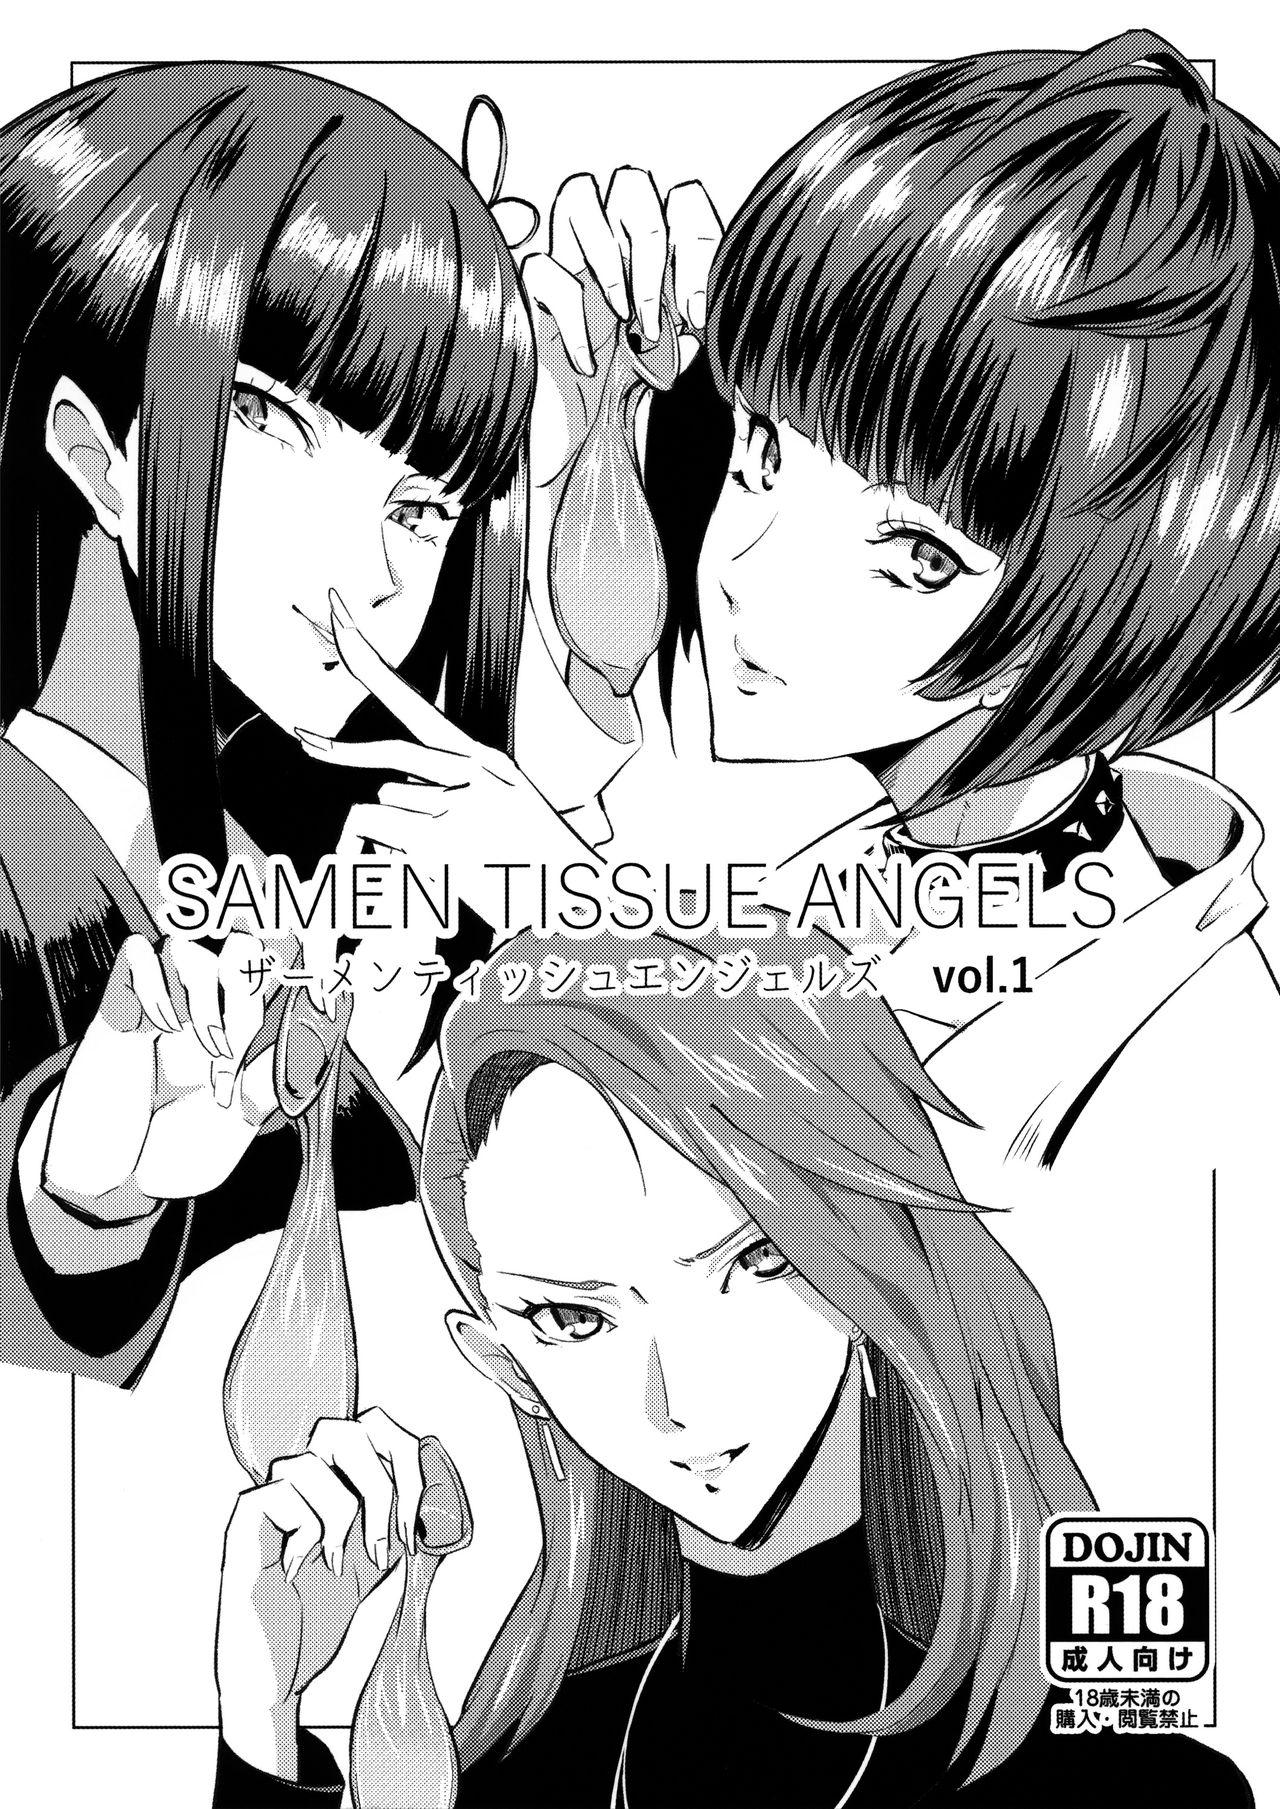 Samen Tissue Angels Vol. 1 1